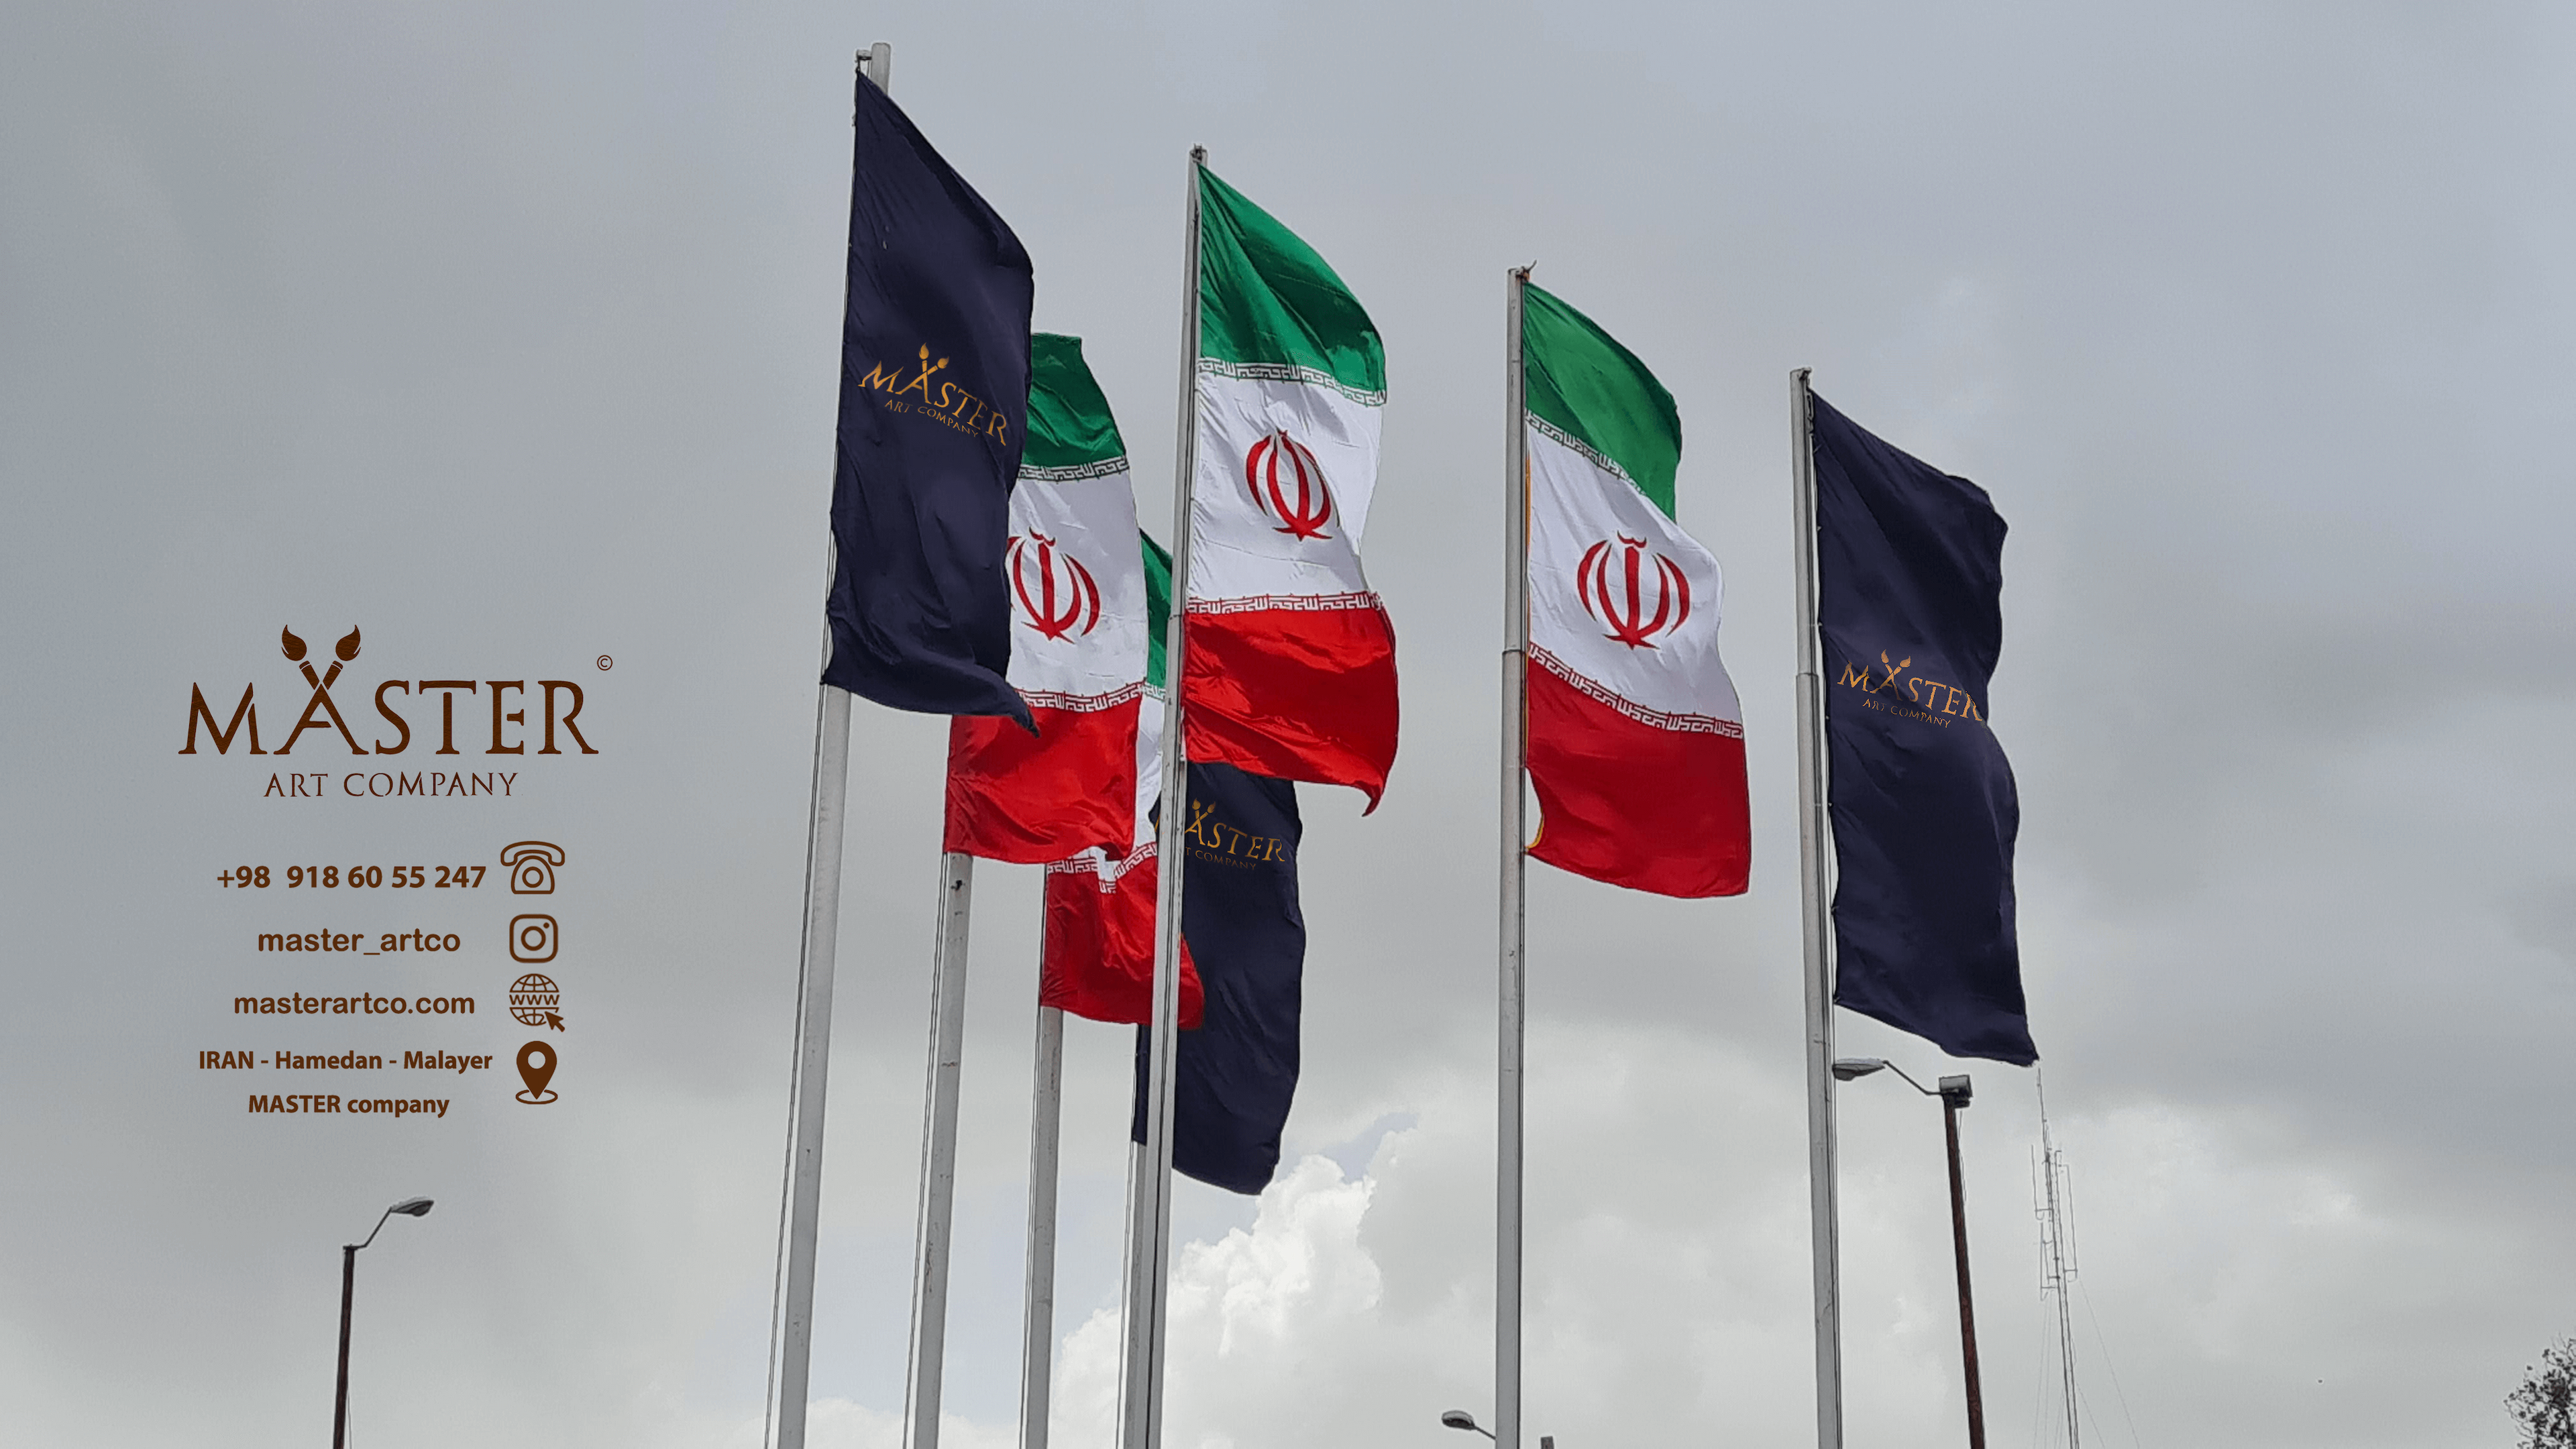 پرچم شرکت مستر در کنار پرچم ایران